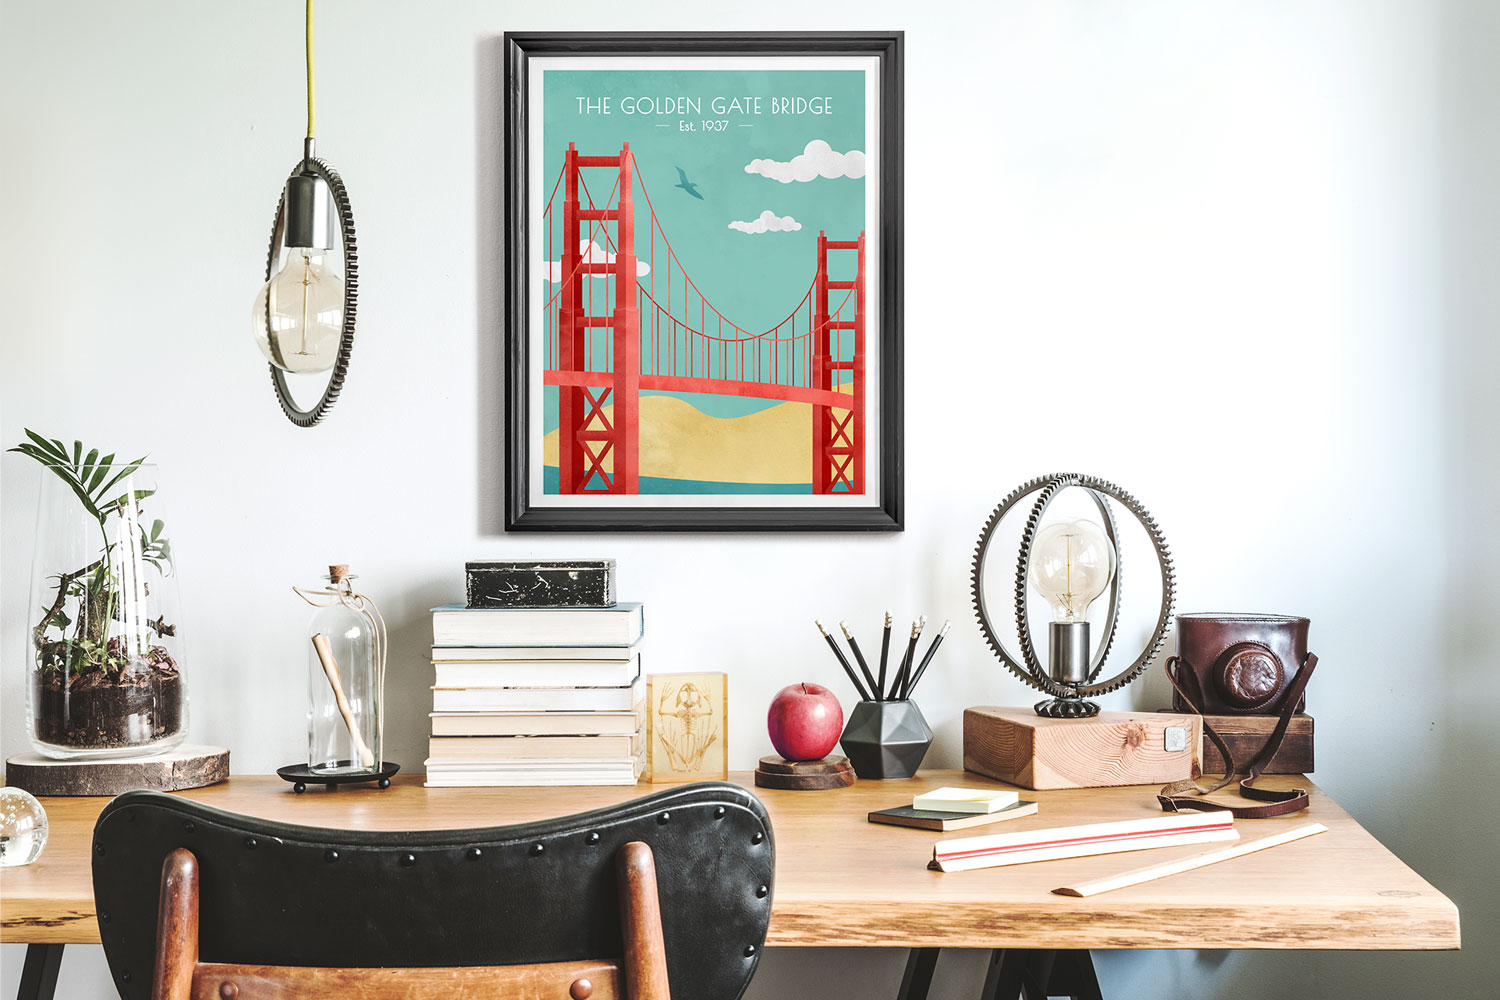 Golden Gate Bridge framed